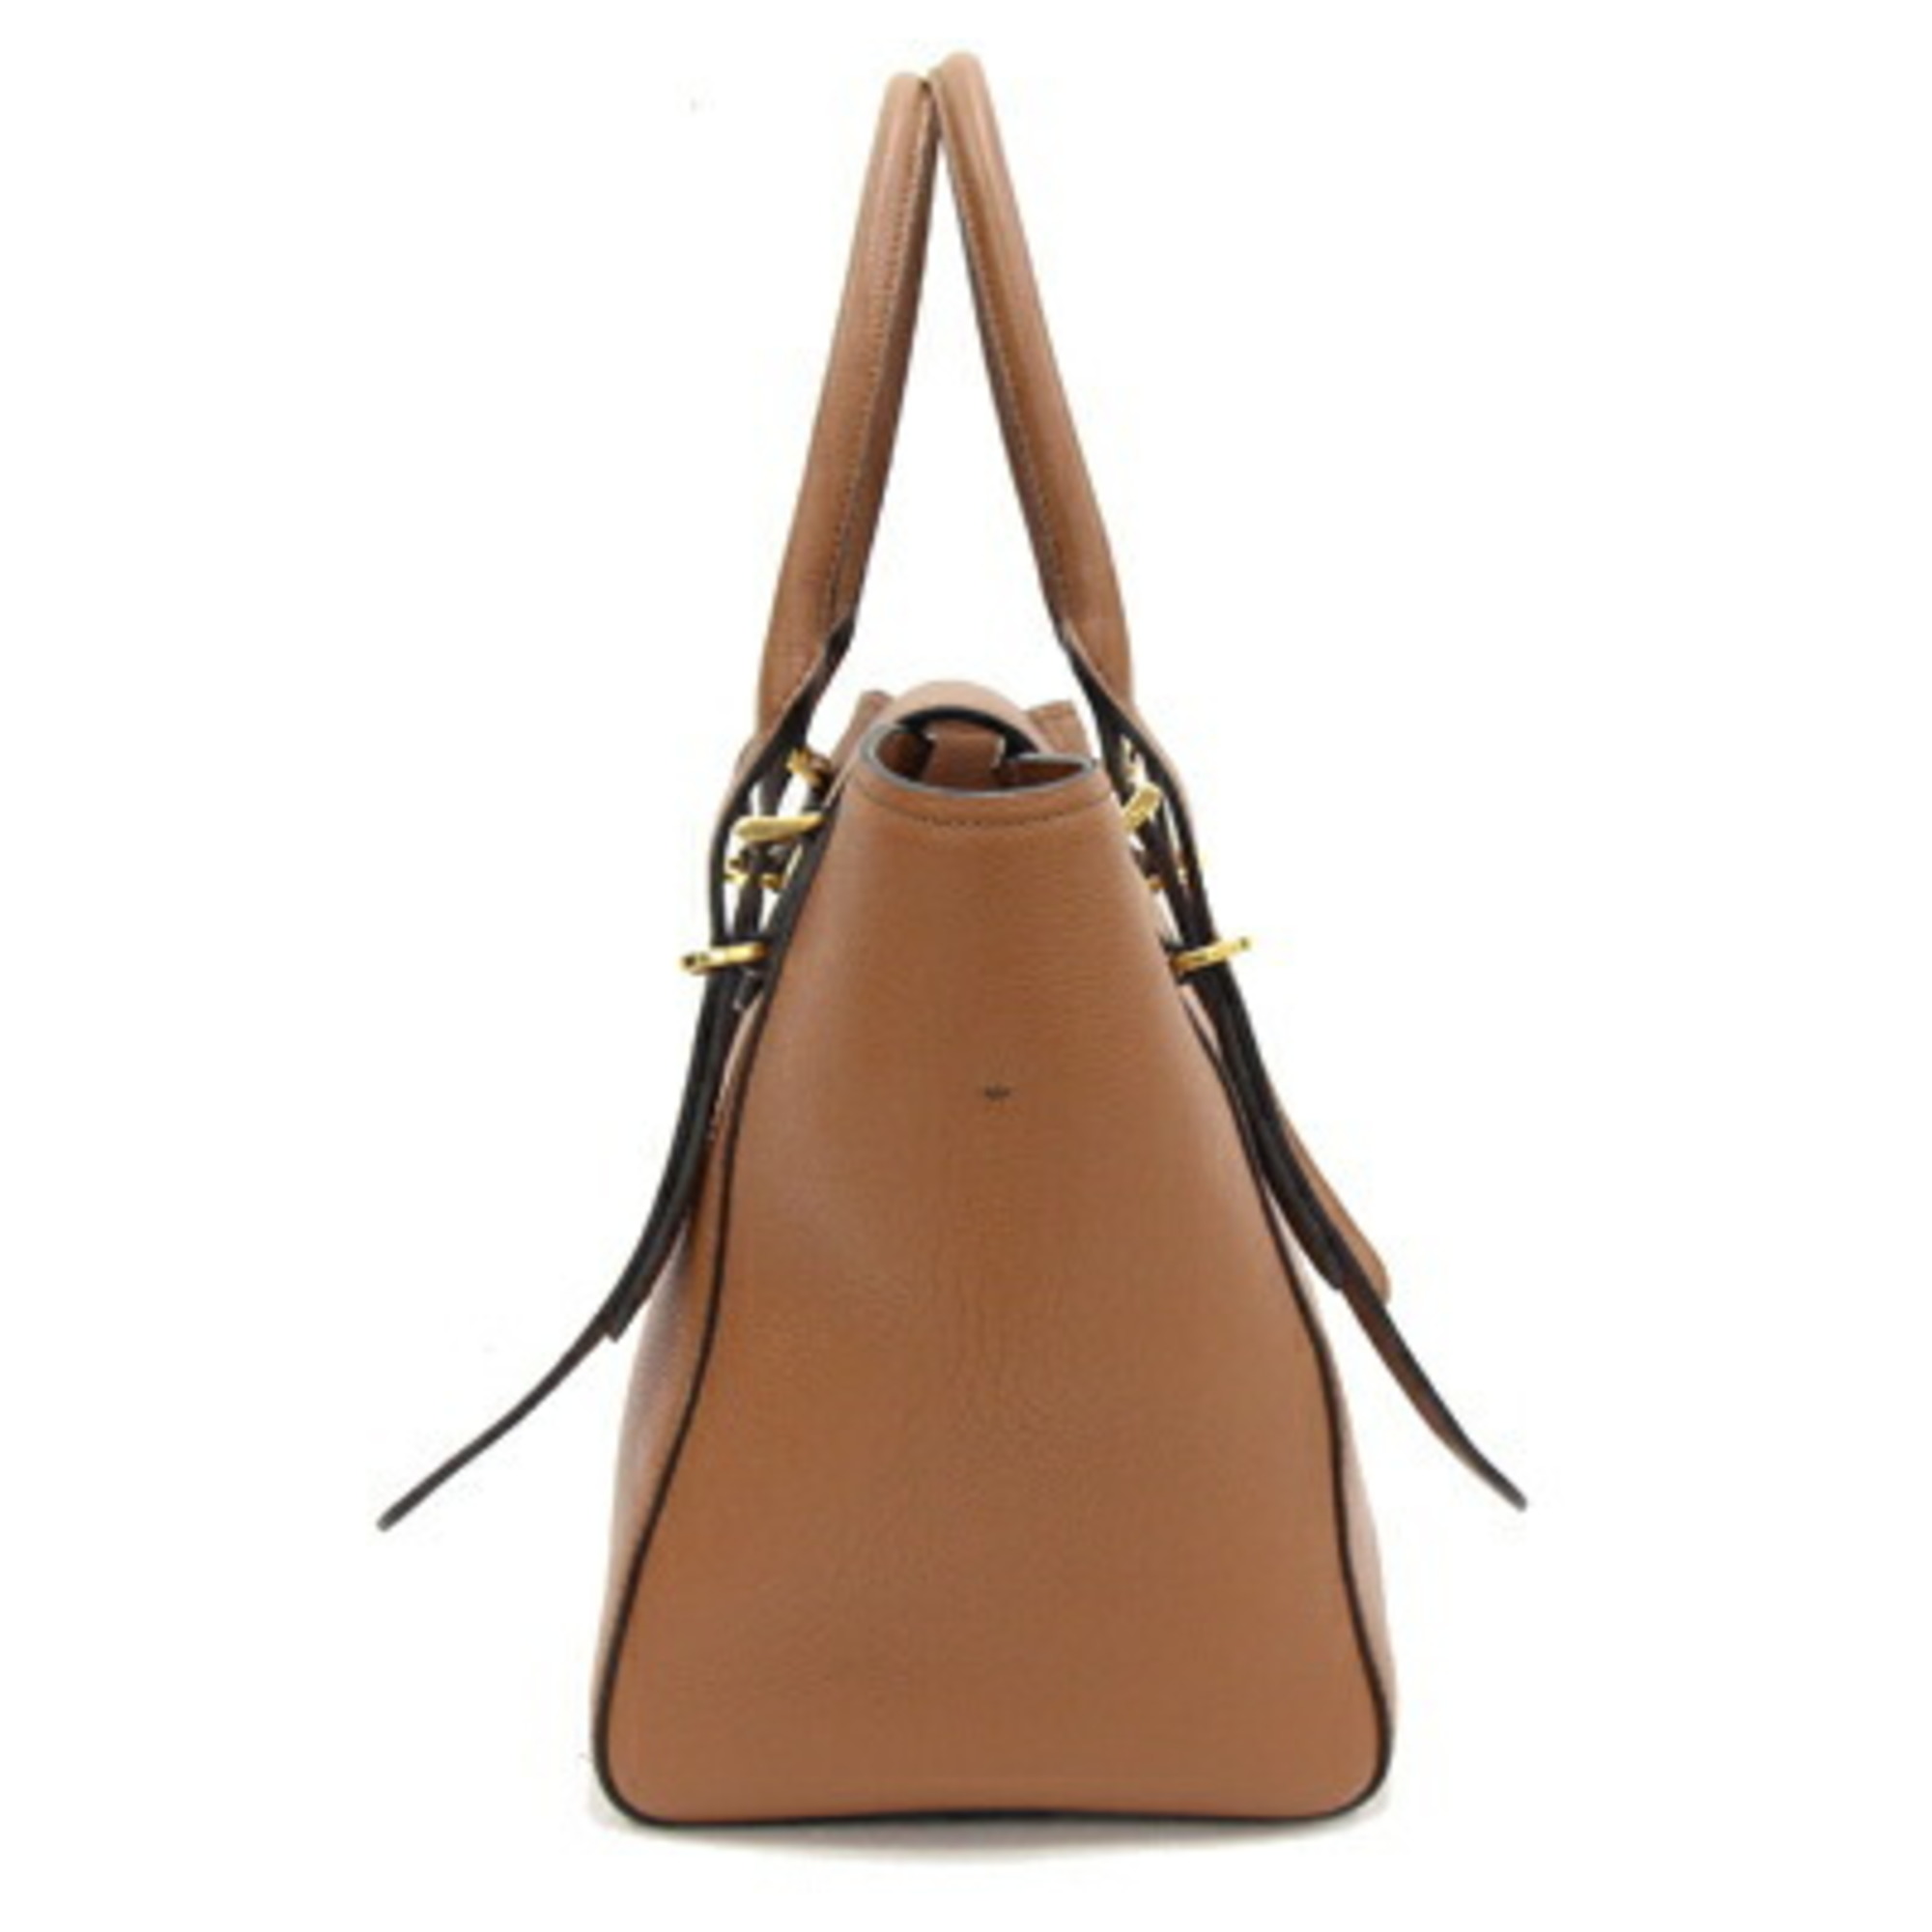 Prada Handbag 1BA270 Brown Leather Shoulder Bag Women's PRADA